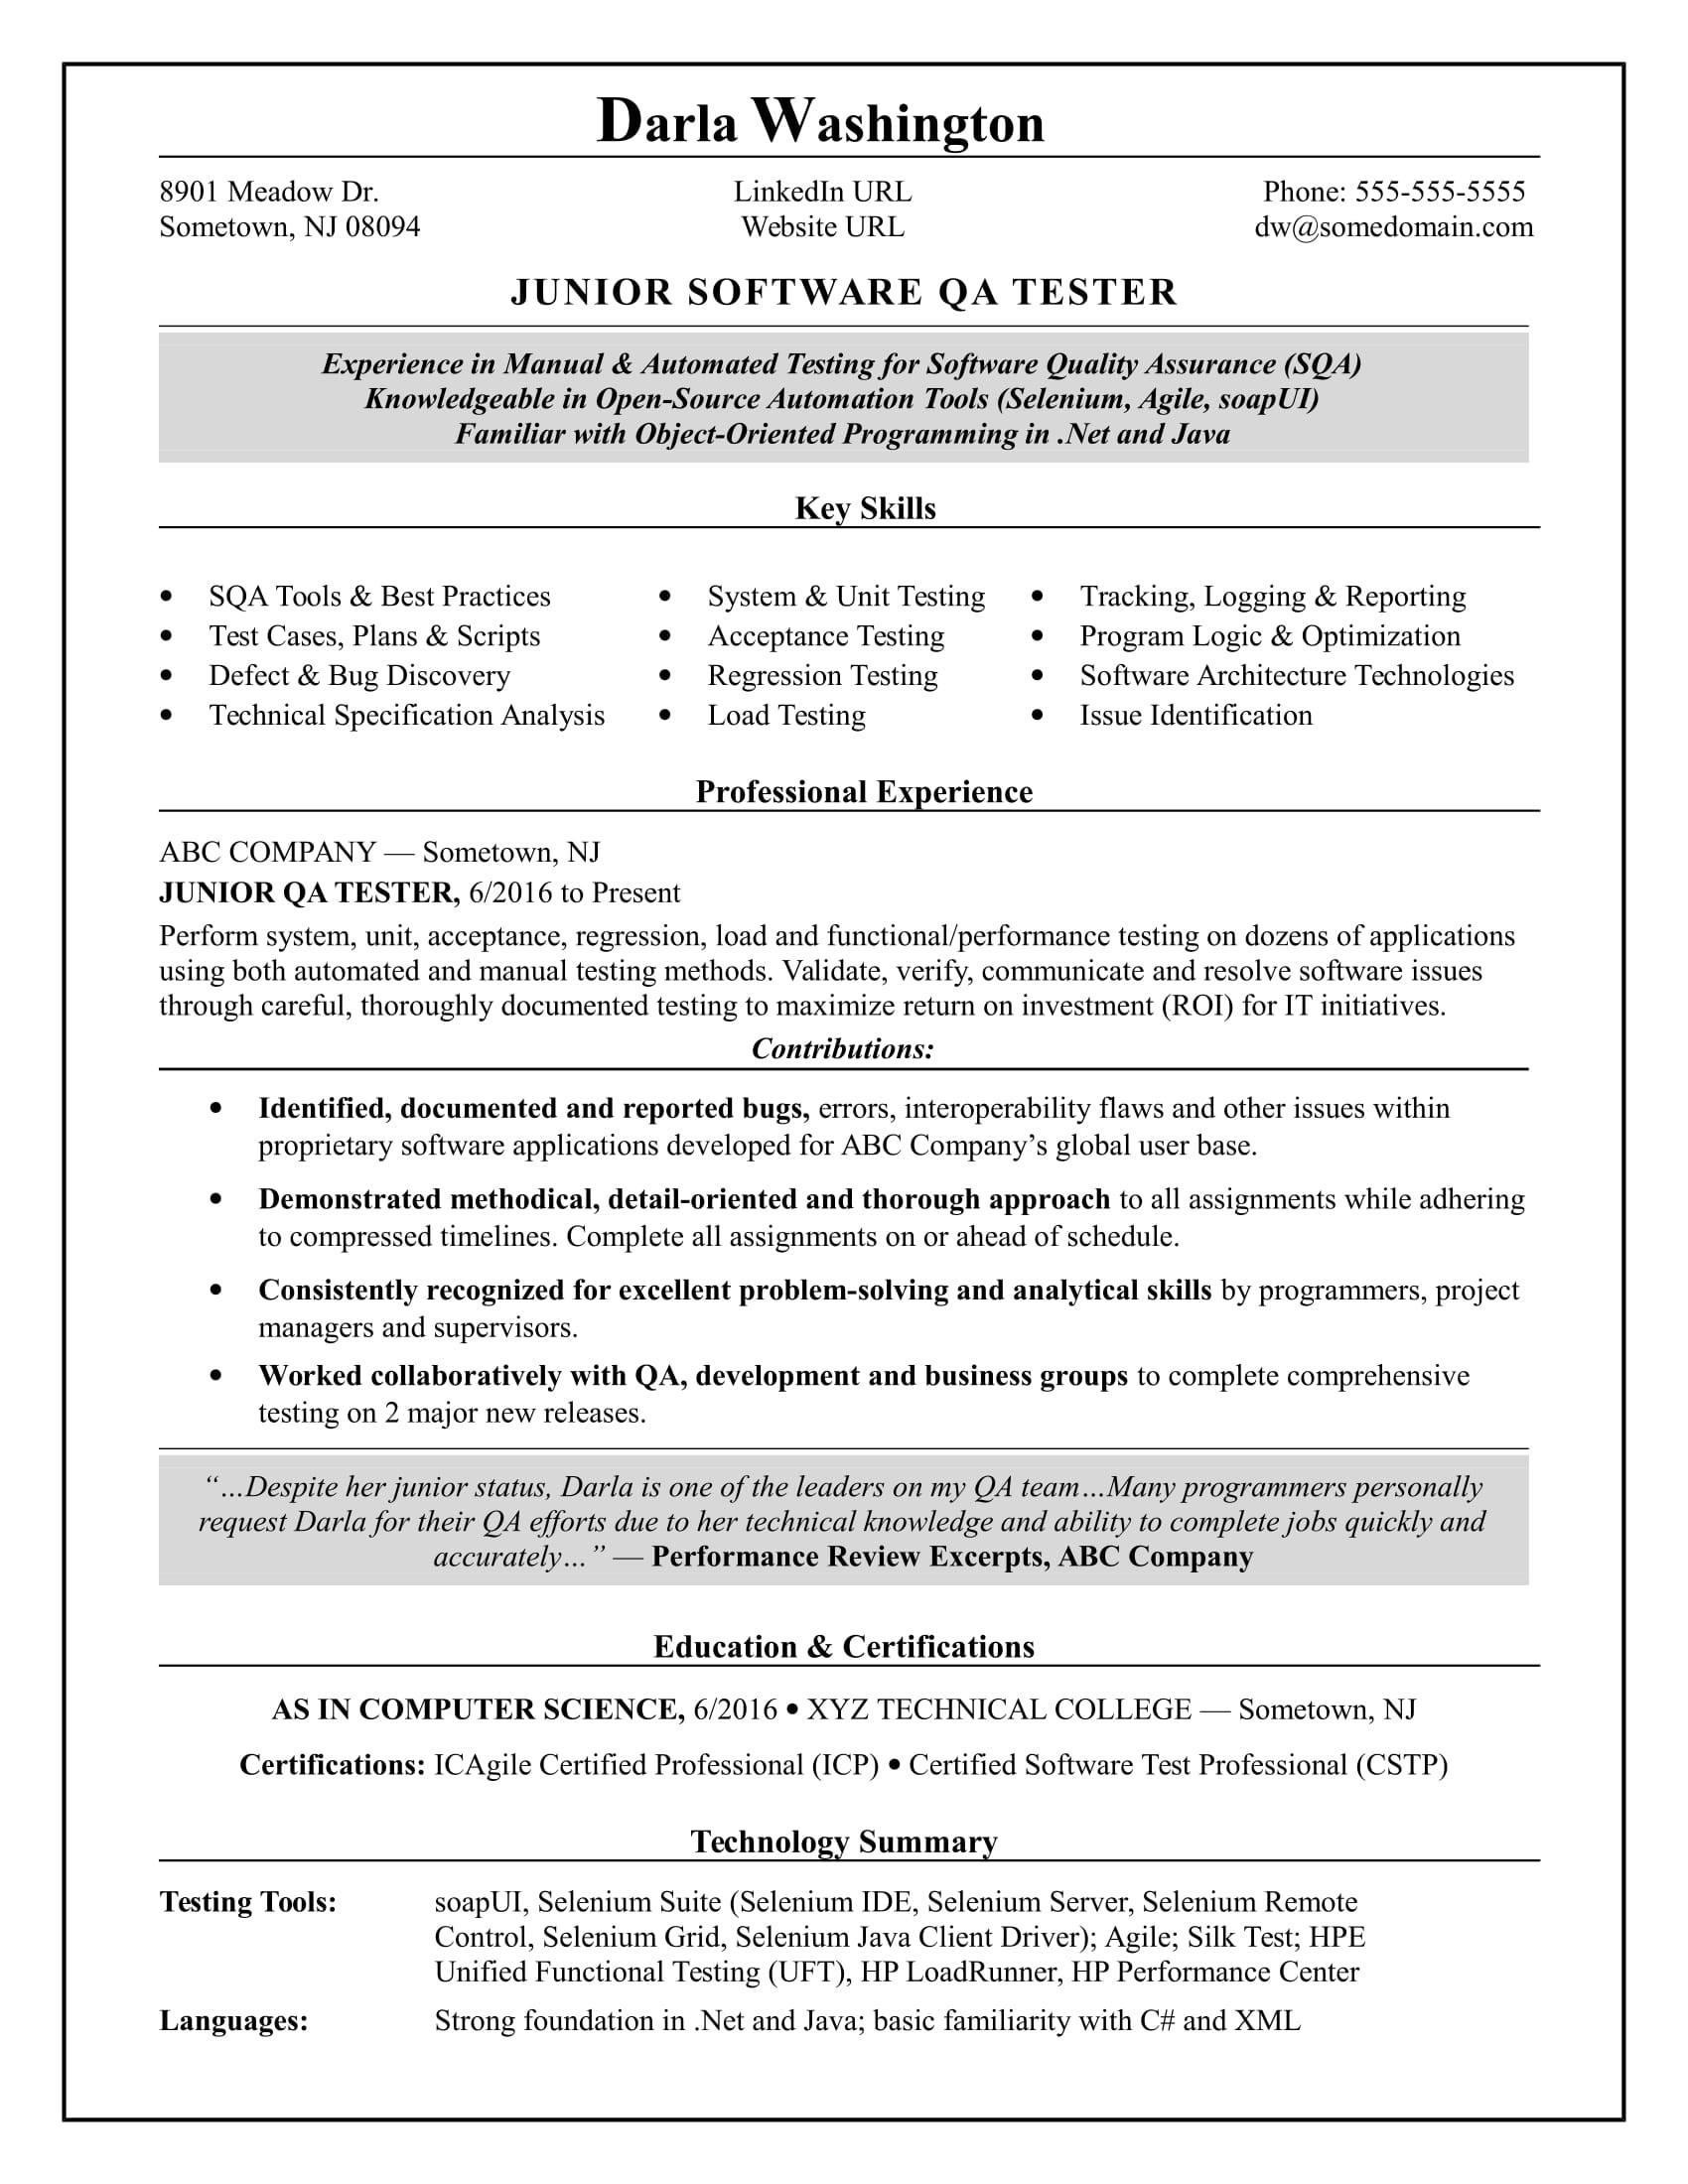 Sample Resume for Manual Testing Fresher Entry-level Qa software Tester Resume Sample Monster.com